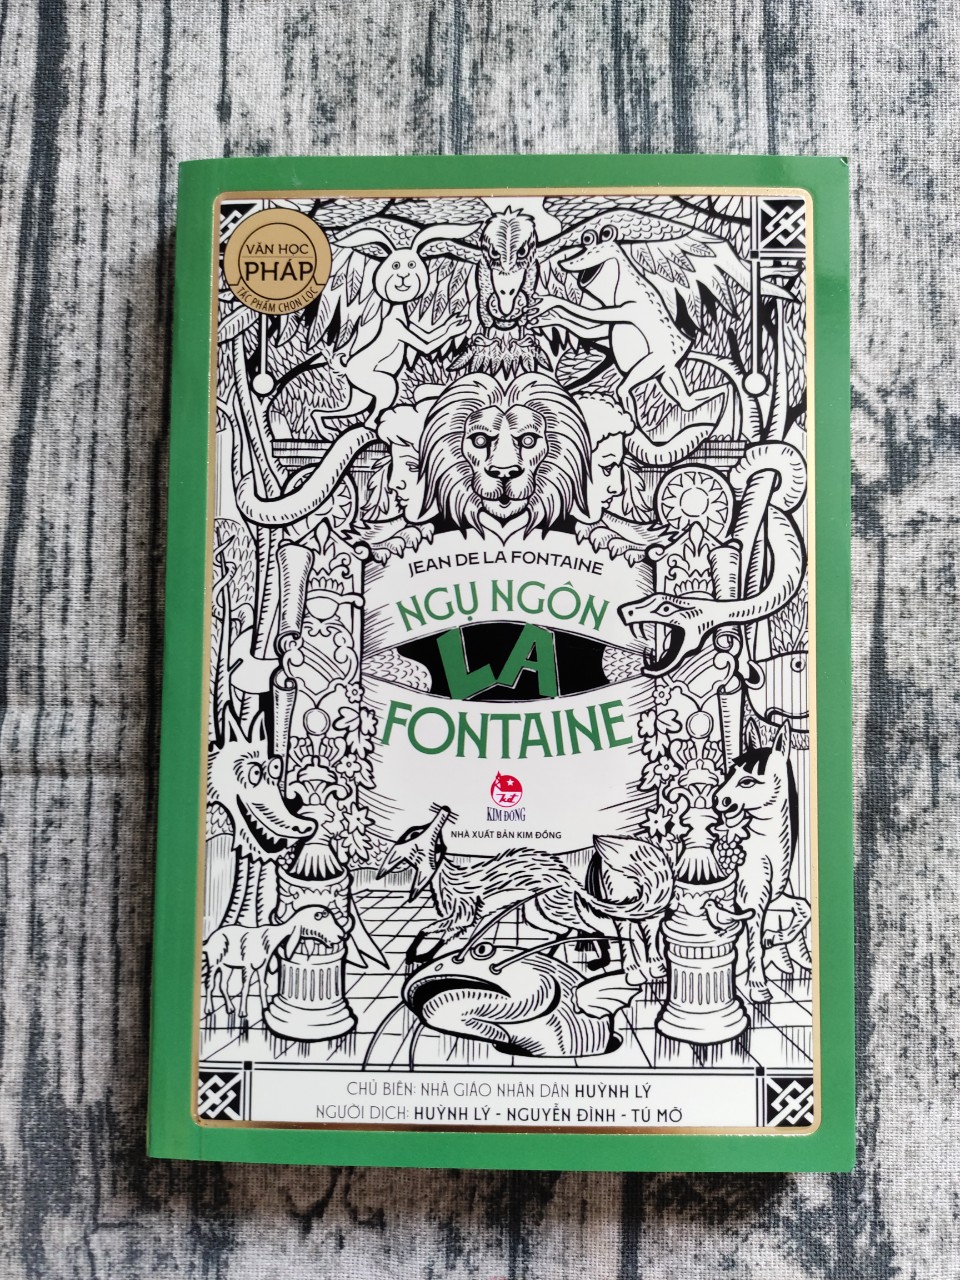 Tác Phẩm Chọn Lọc - Văn Học Pháp - Ngụ Ngôn La Fontaine